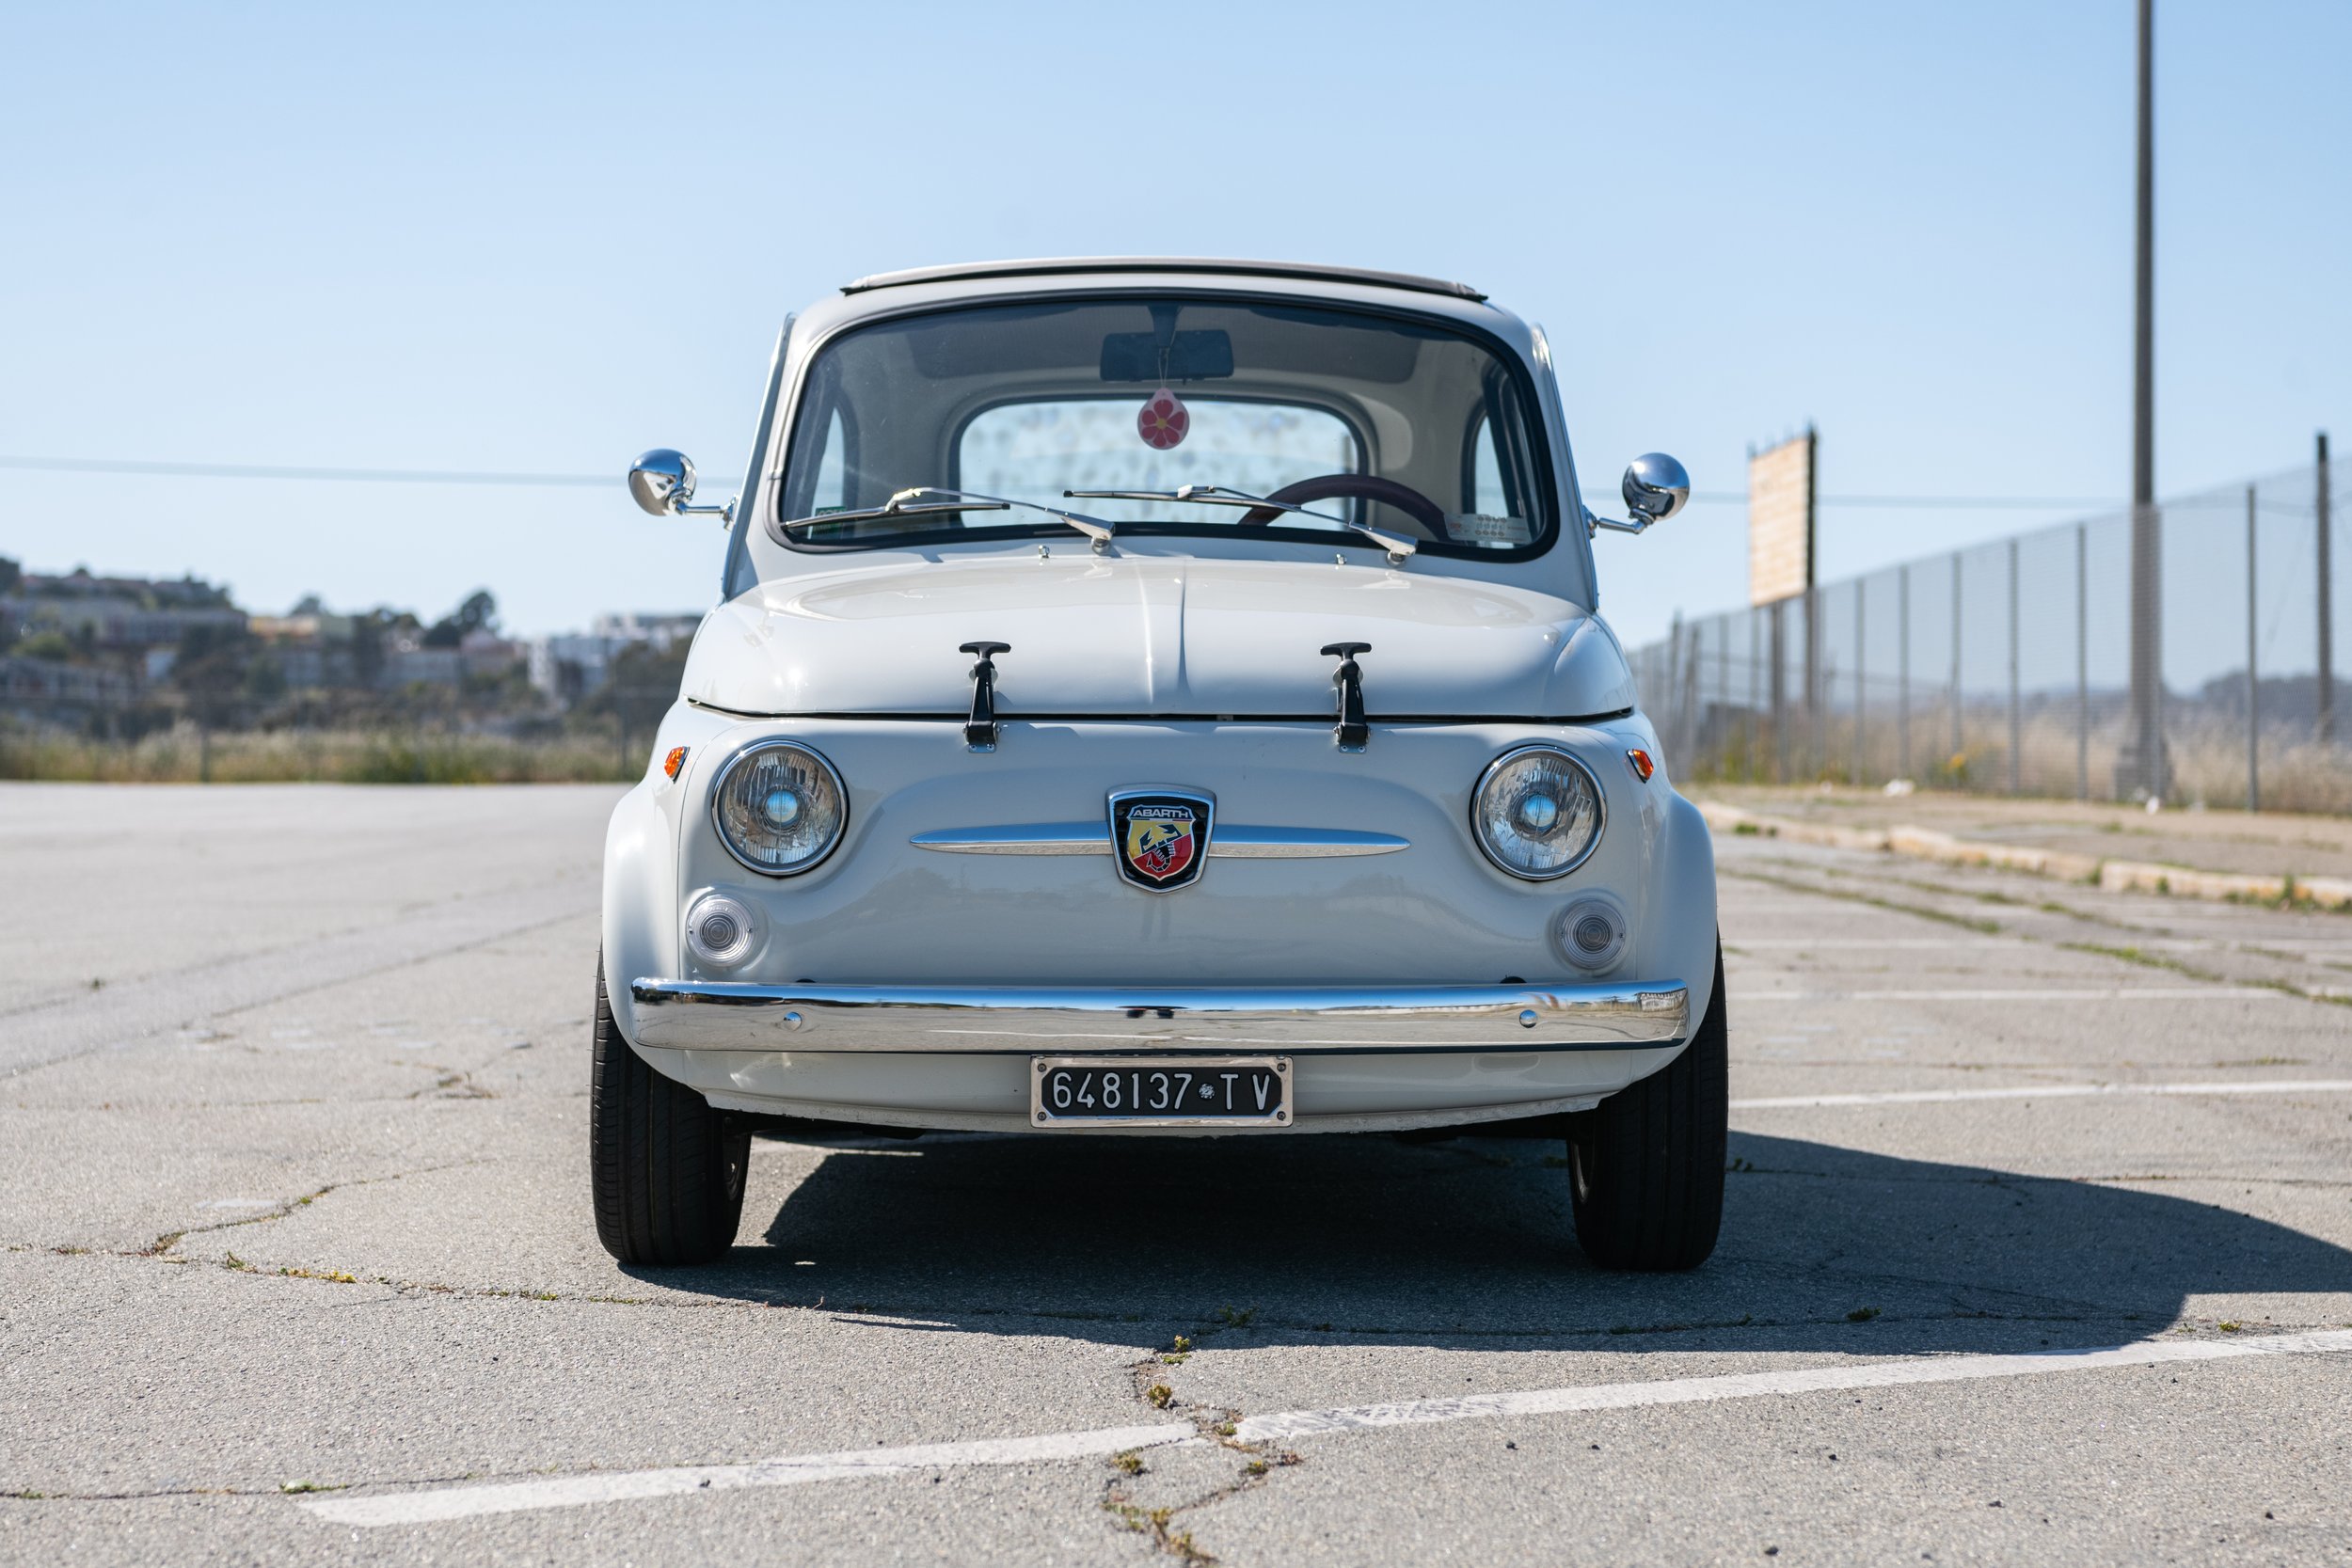 Bello Moto_1965 Fiat 500 - WHITE - (D234)_Sharplite_FULL RES-94.jpg